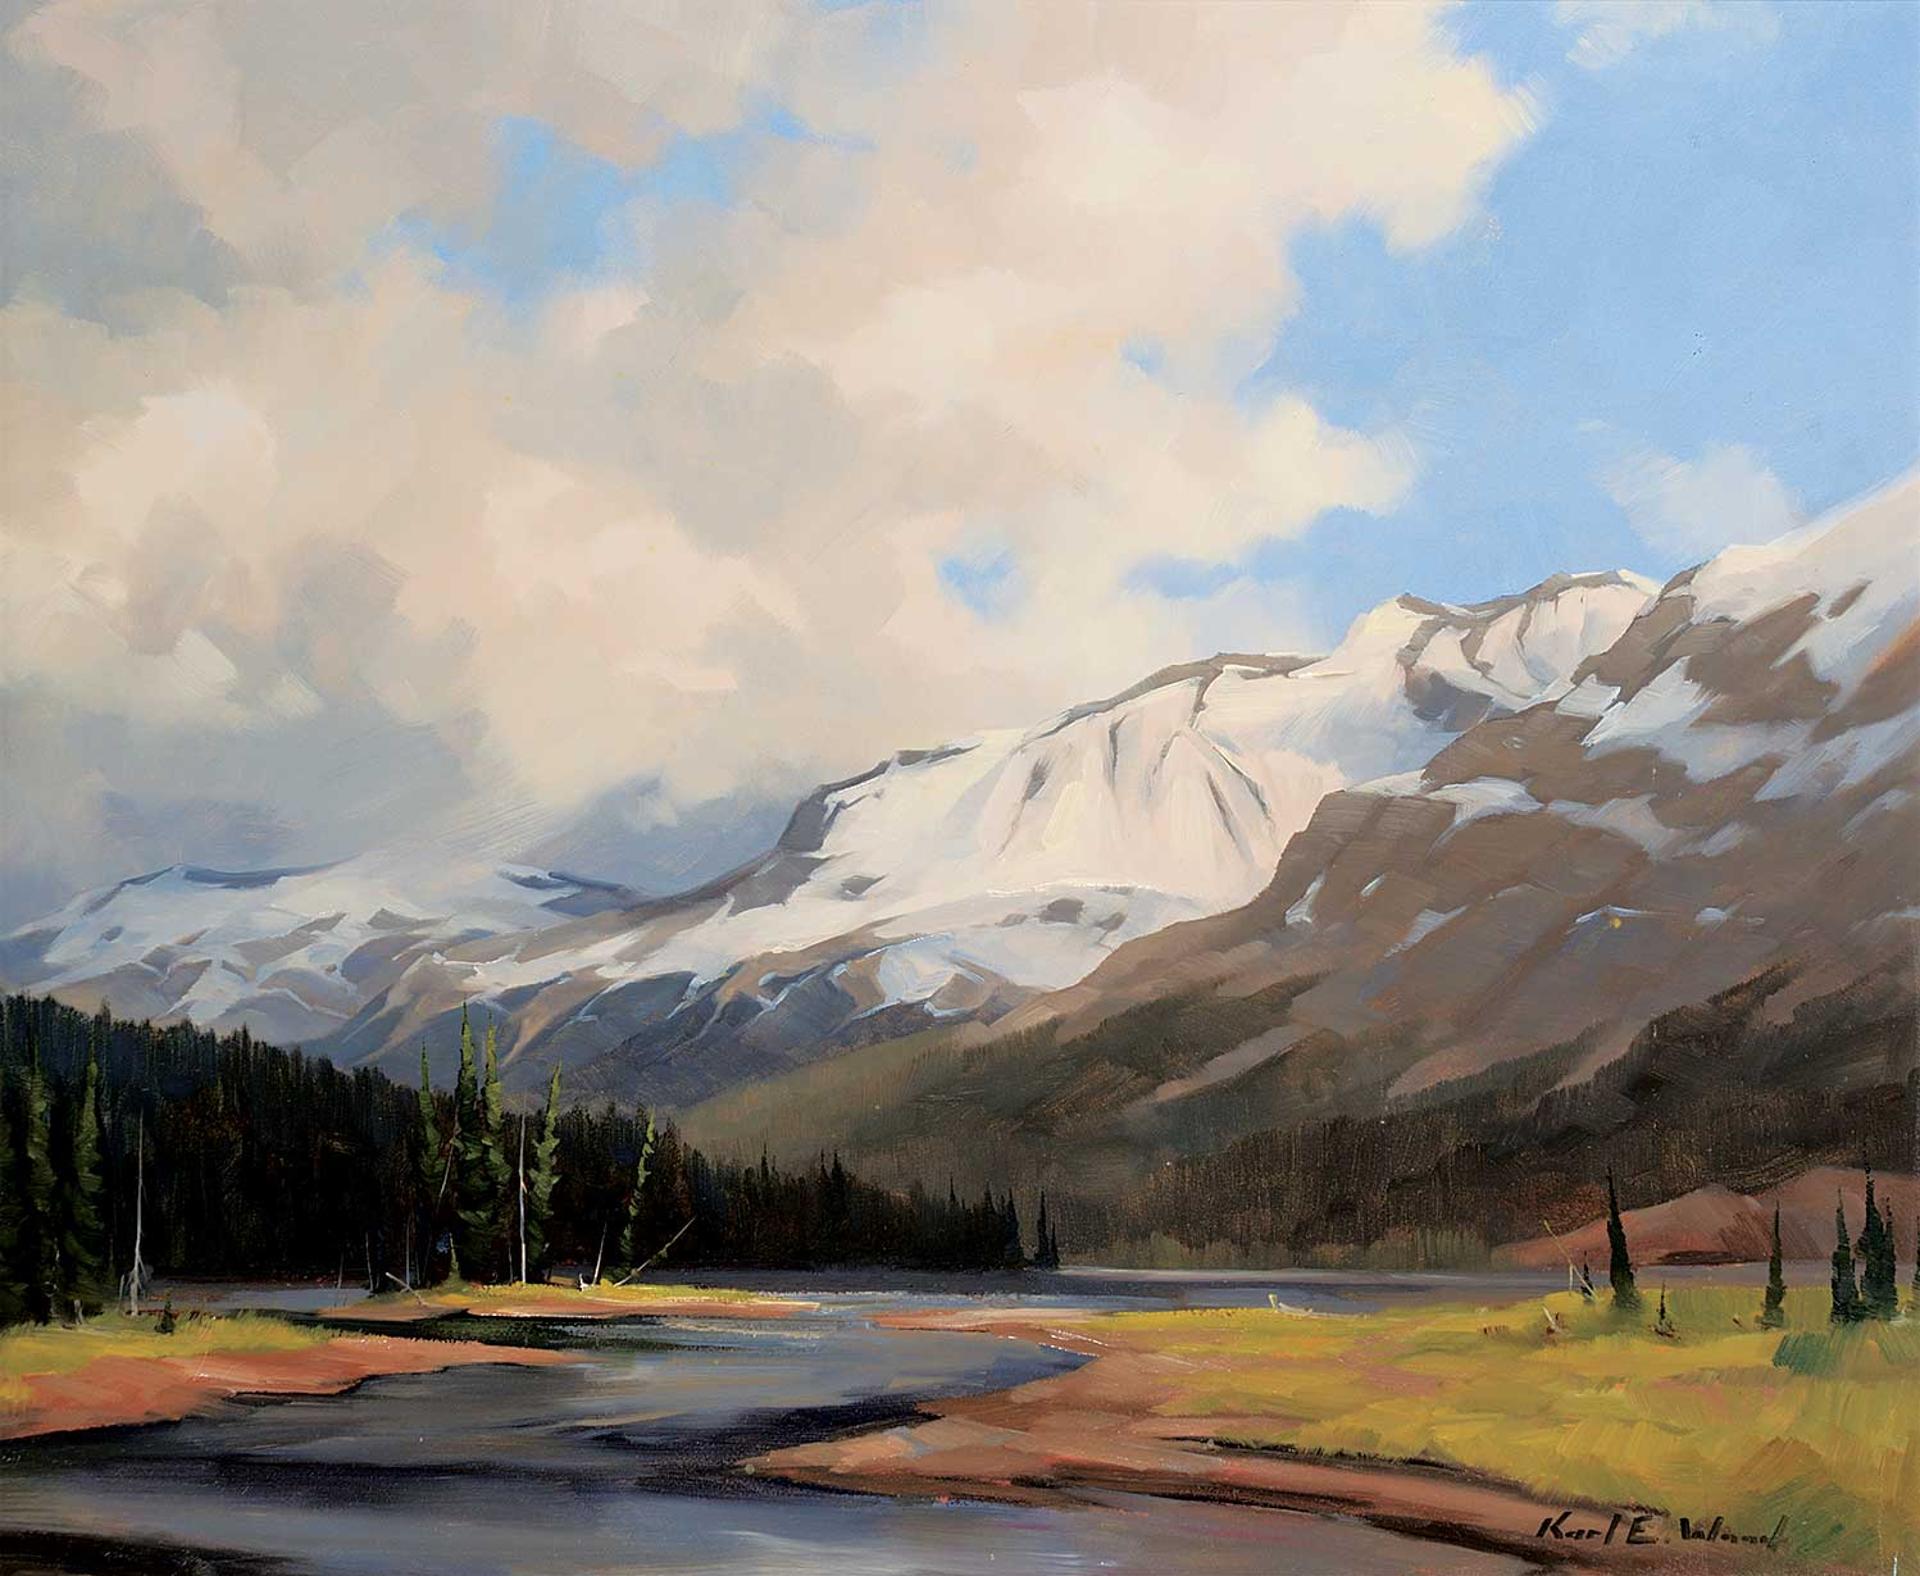 Karl E. Wood (1944-1990) - Smokey River, Mt. Robson Prov. Park